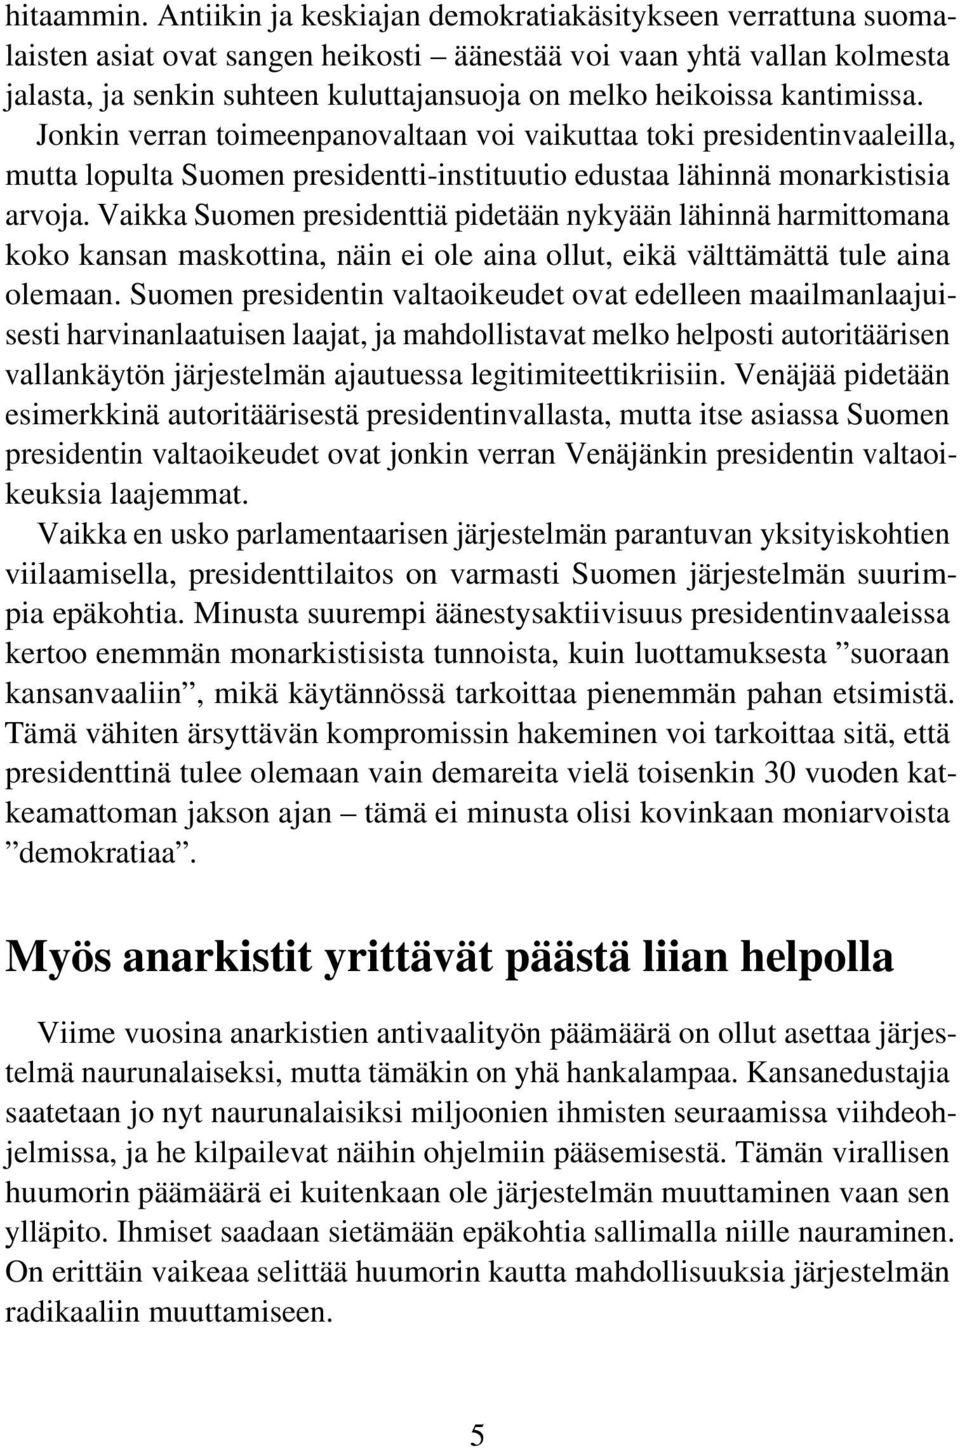 kantimissa. Jonkin verran toimeenpanovaltaan voi vaikuttaa toki presidentinvaaleilla, mutta lopulta Suomen presidentti-instituutio edustaa lähinnä monarkistisia arvoja.